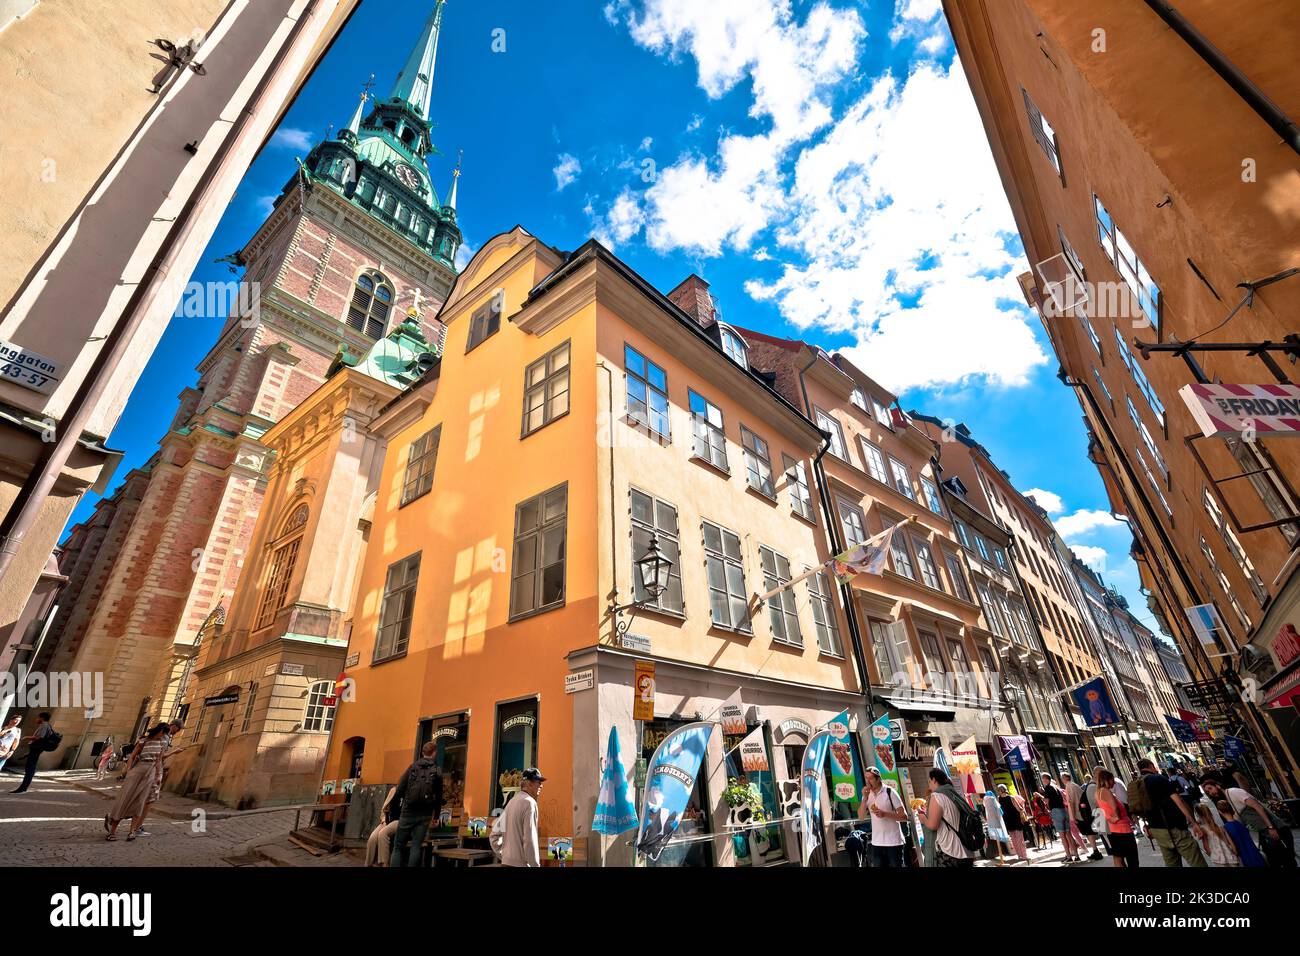 Stoccolma, Svezia, 26 2022 agosto: Trafficata strada turistica della città vecchia di Stoccolma. Negozi e ristoranti, e una vista mozzafiato sull'architettura. Foto Stock